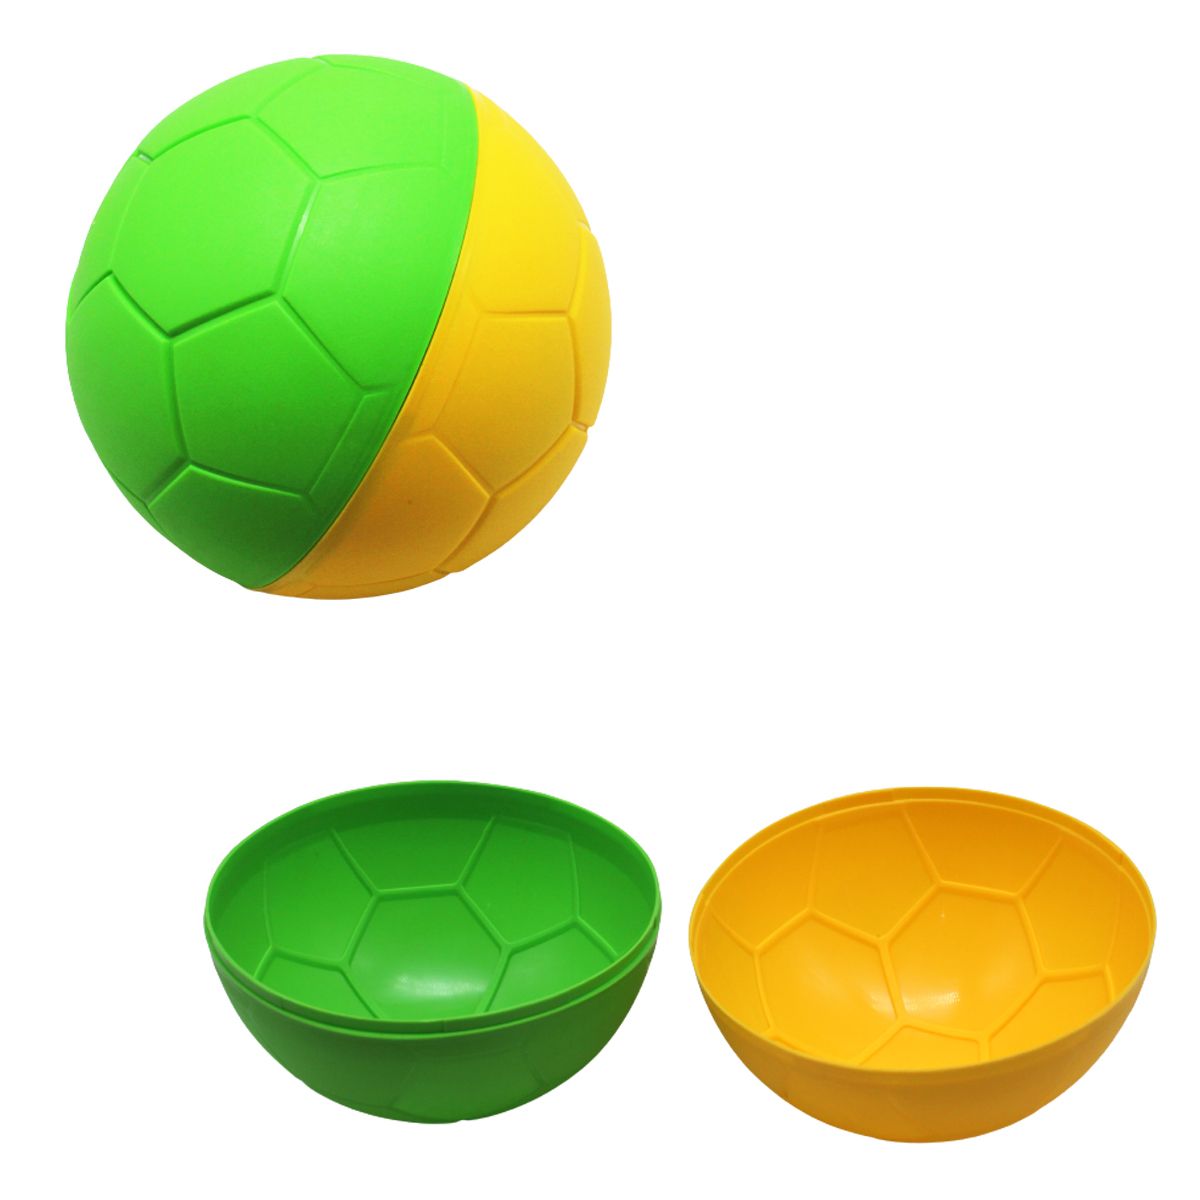 Формочка для песка "Мячик", желто-зеленая